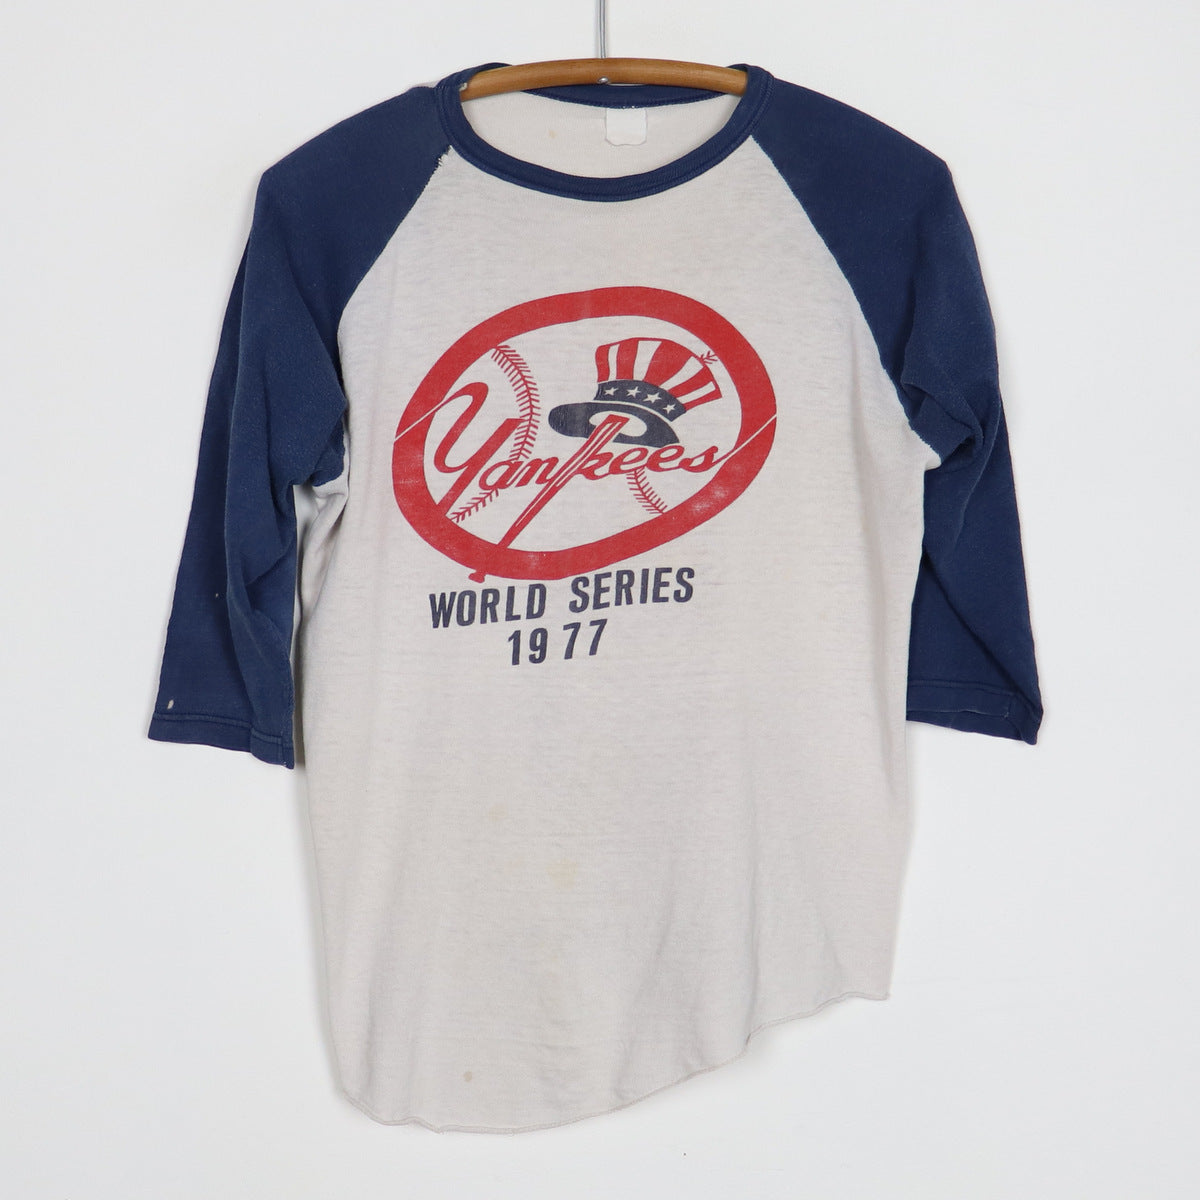 1977 New York Yankees World Series Jersey Shirt